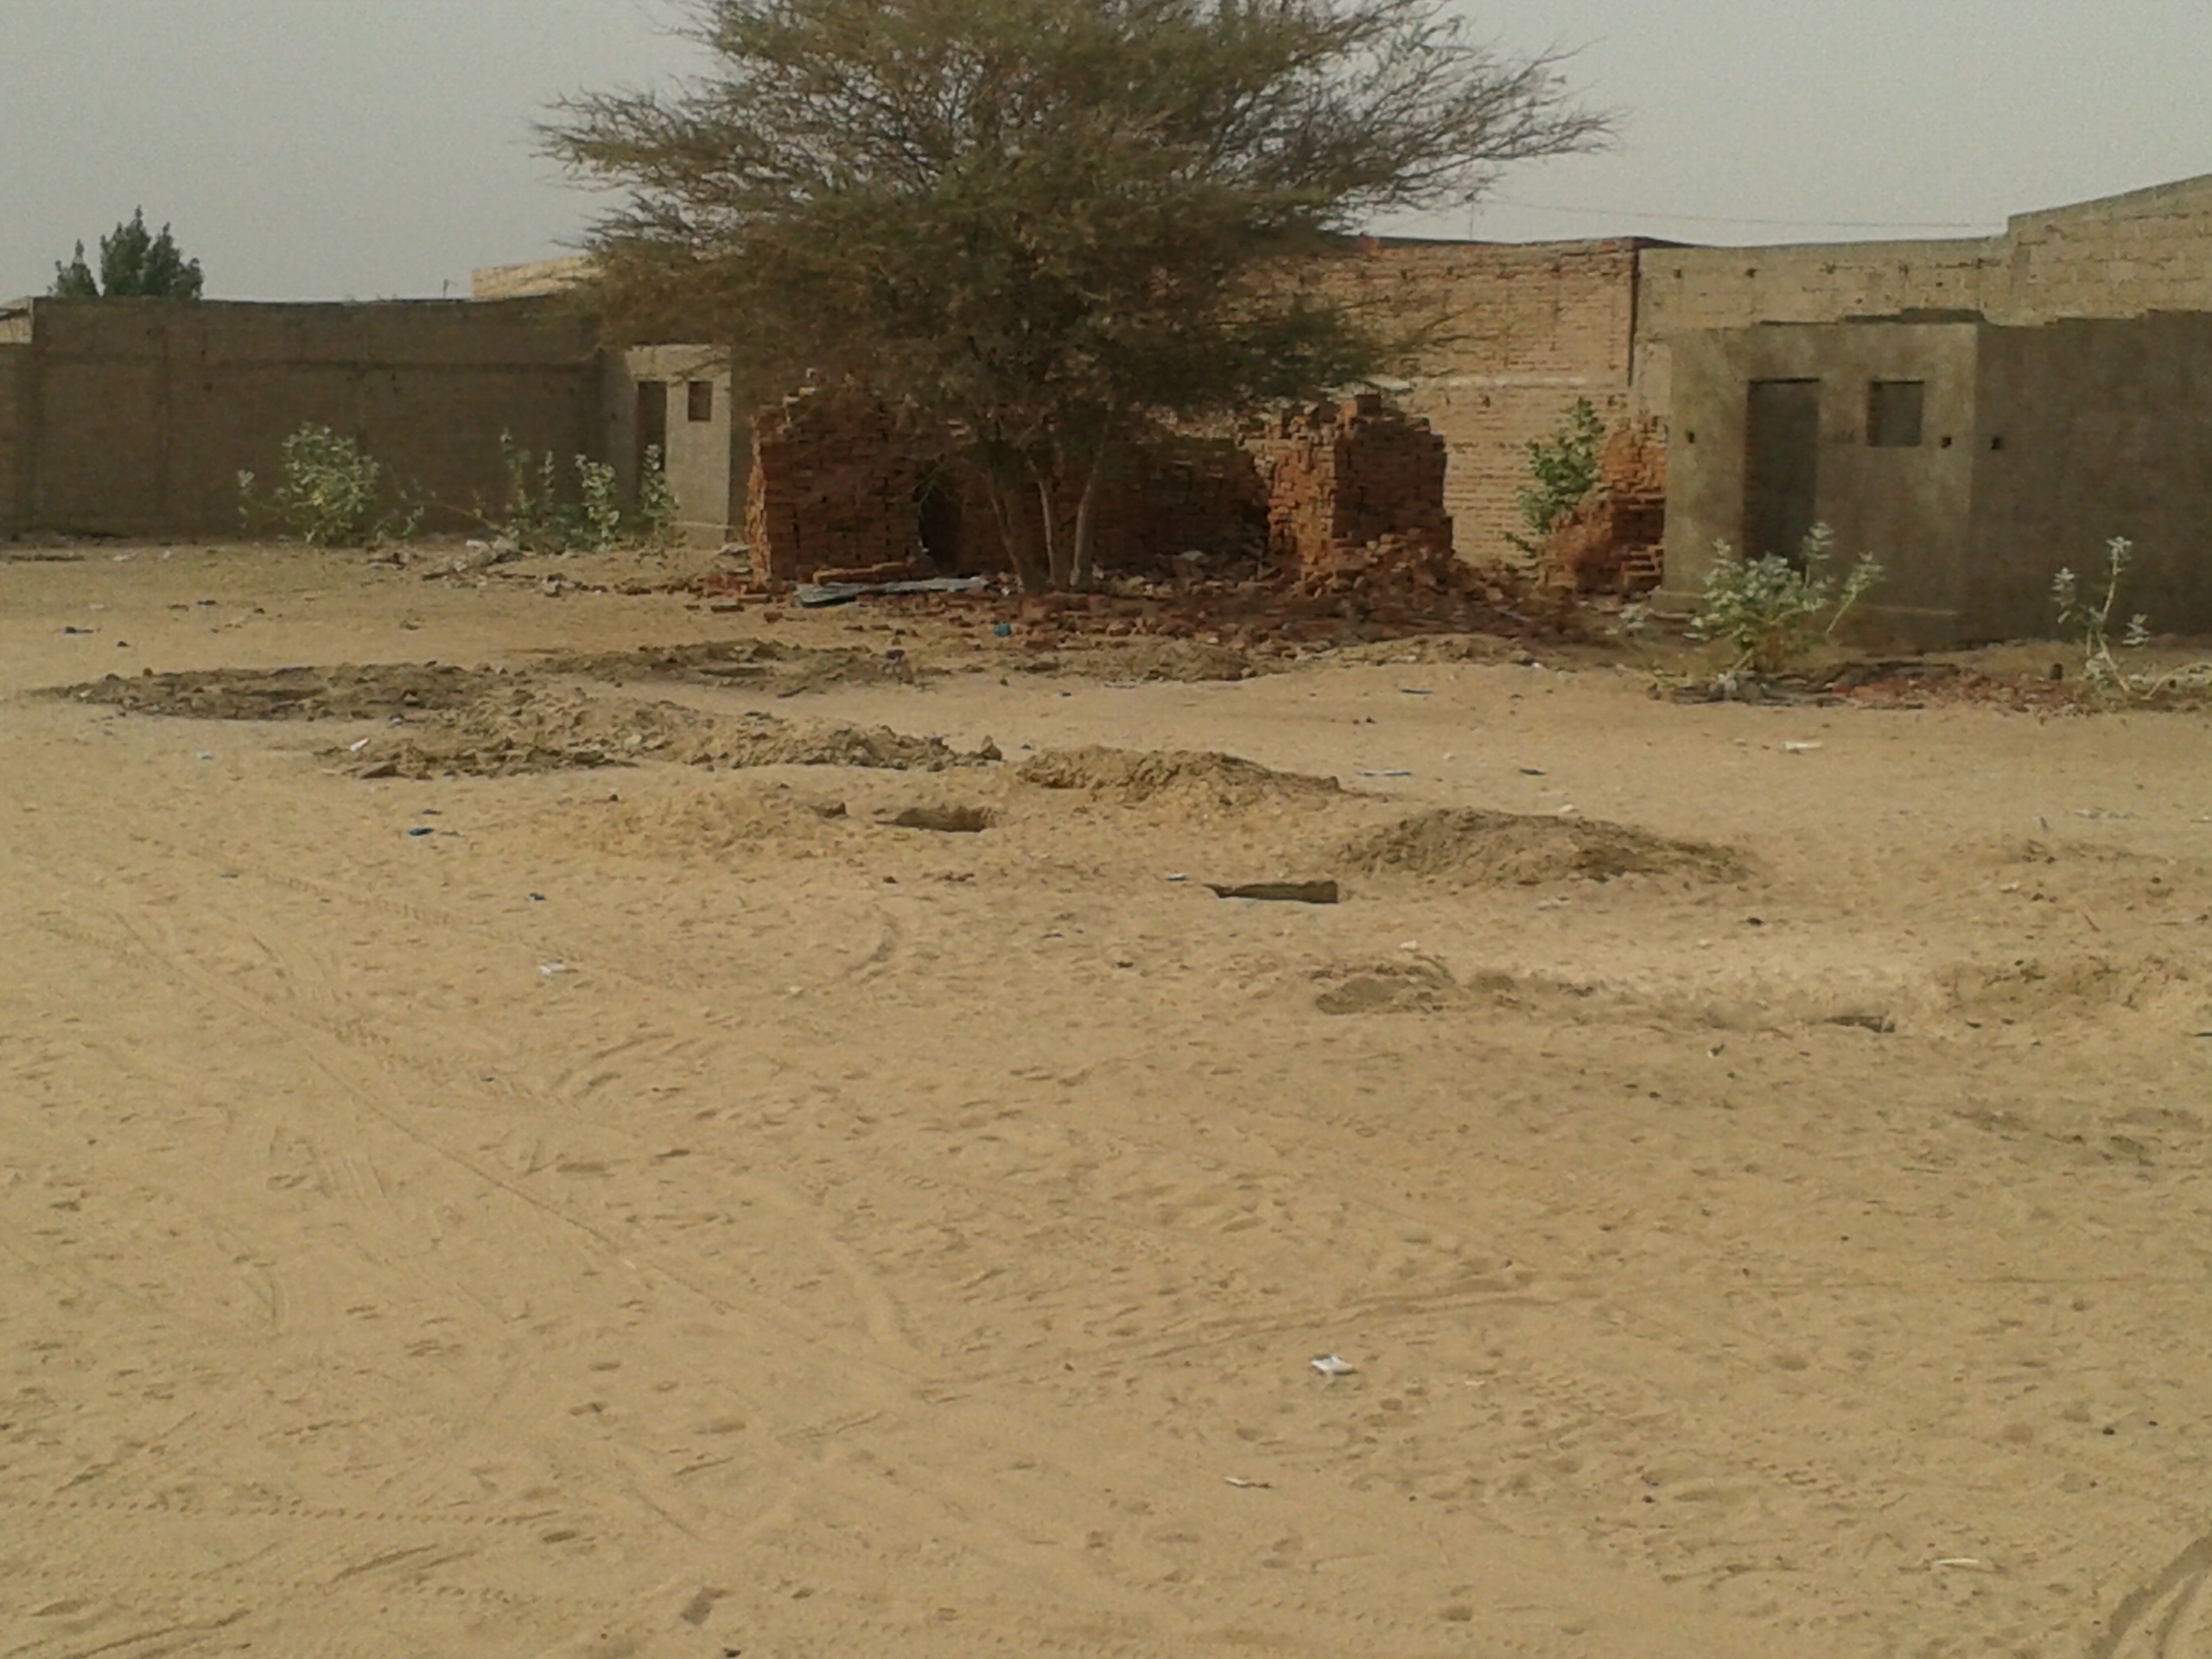 Un repère identifié par Abaifouta comme fosse commune du temps de Habré